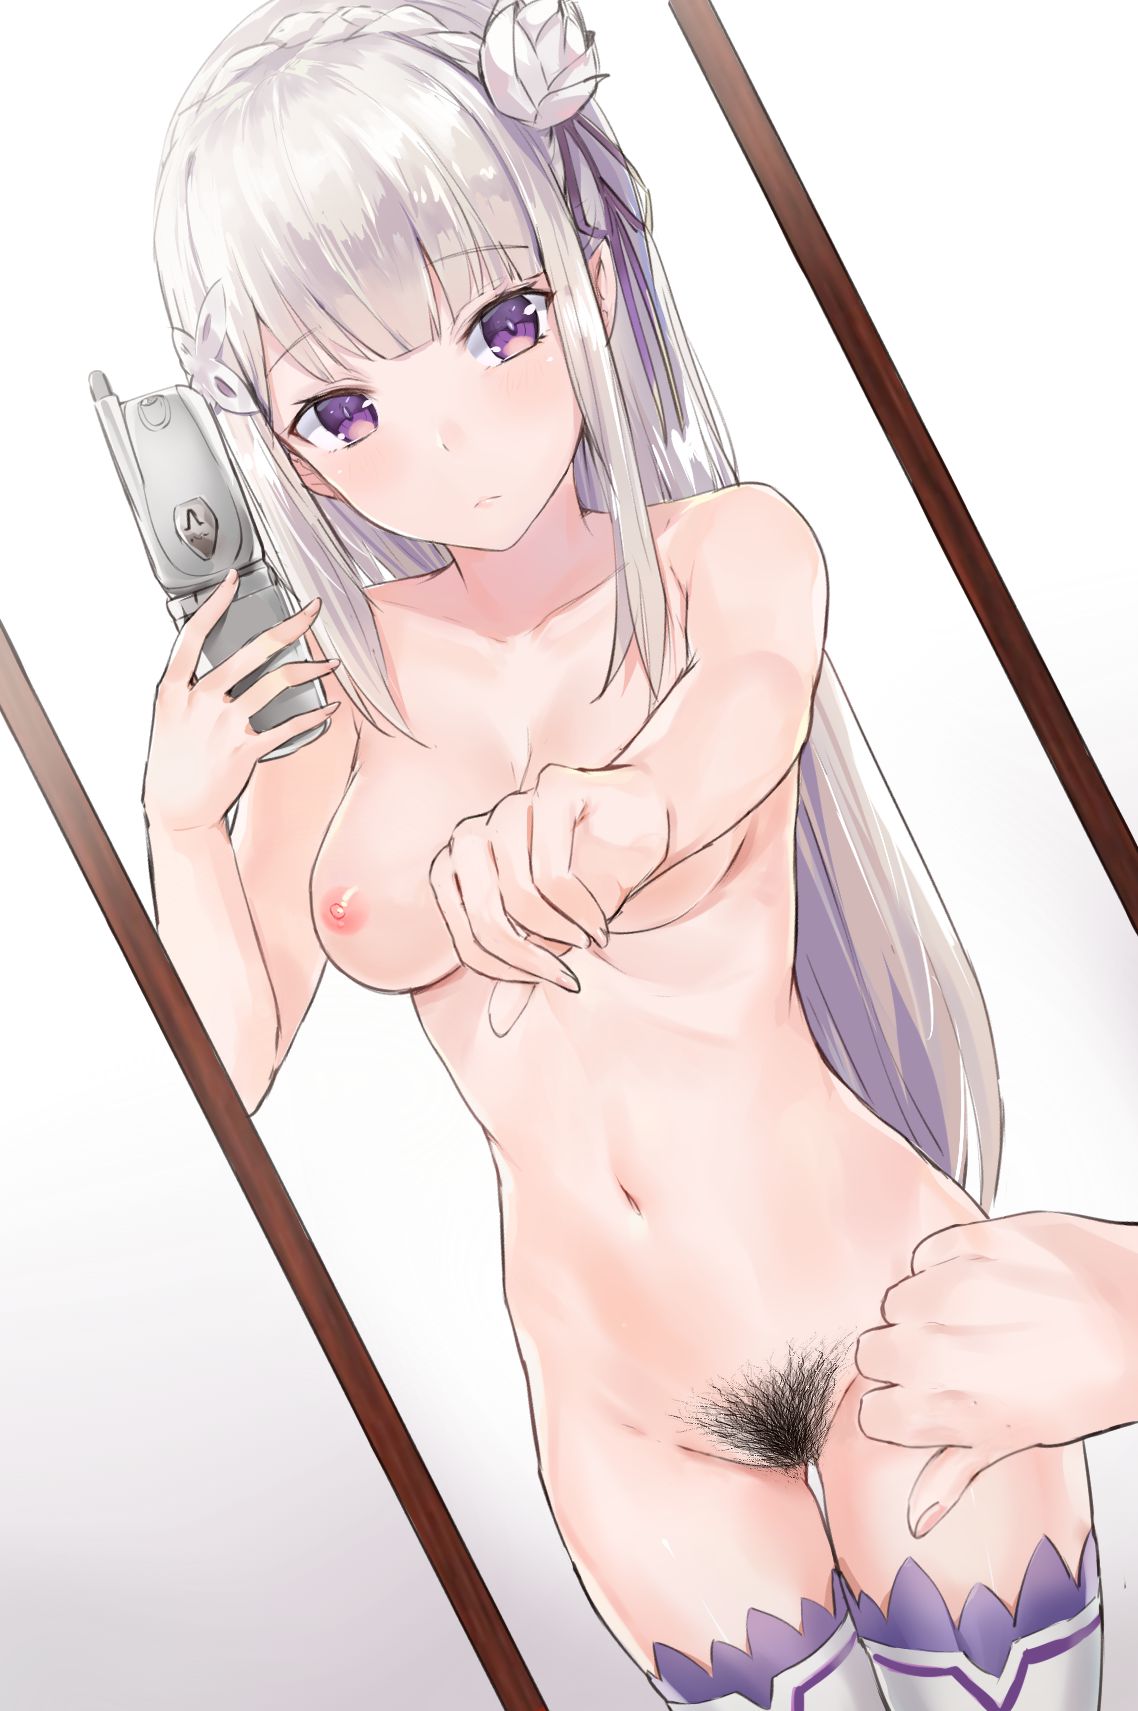 Rezero's Oni Kawaii Erotica Image Summary. vol.5 33